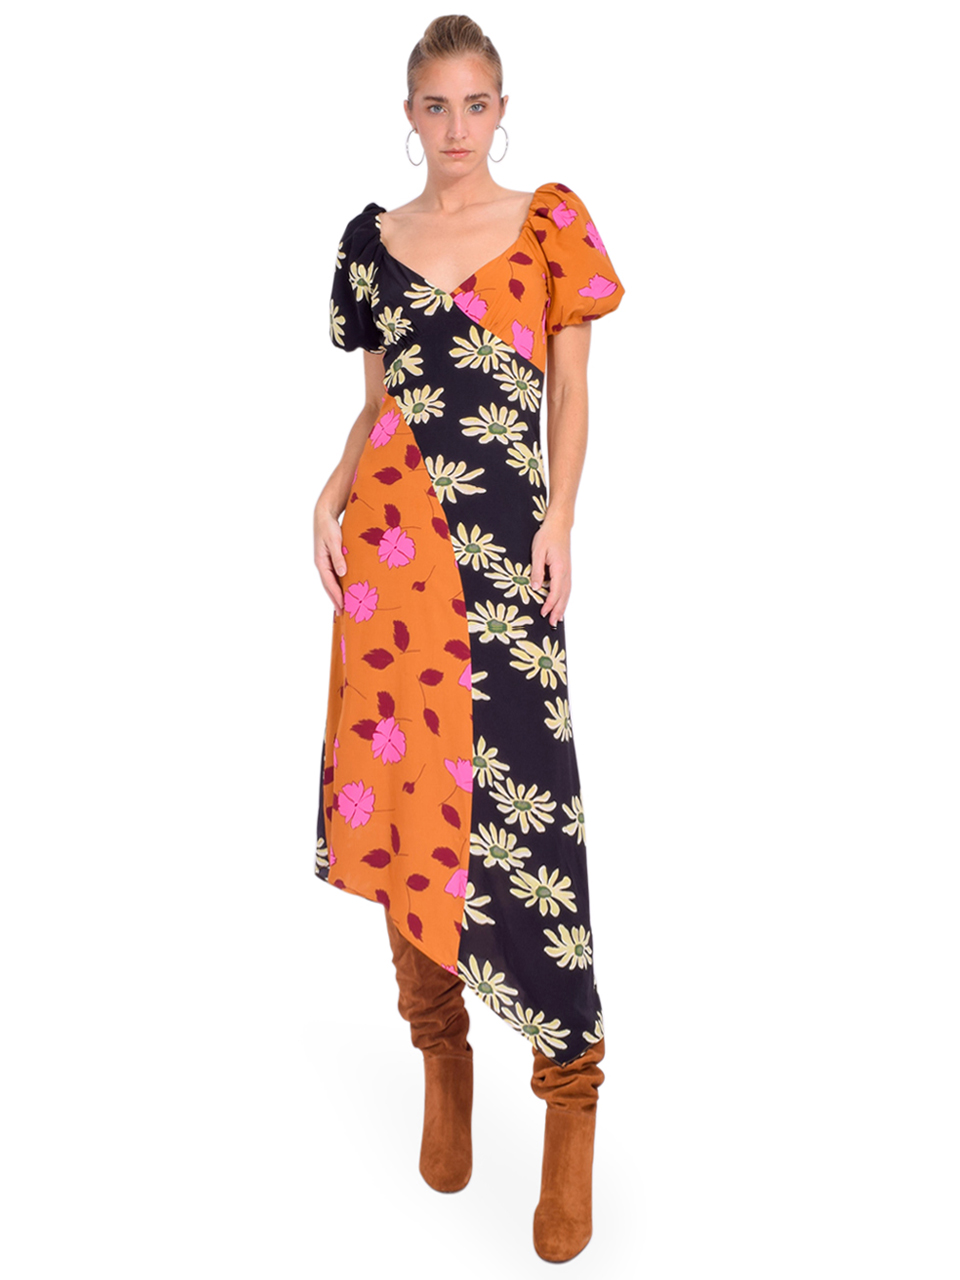 RHODE Teresa Dress in Wild Poppy Ink Daisy Front View 1